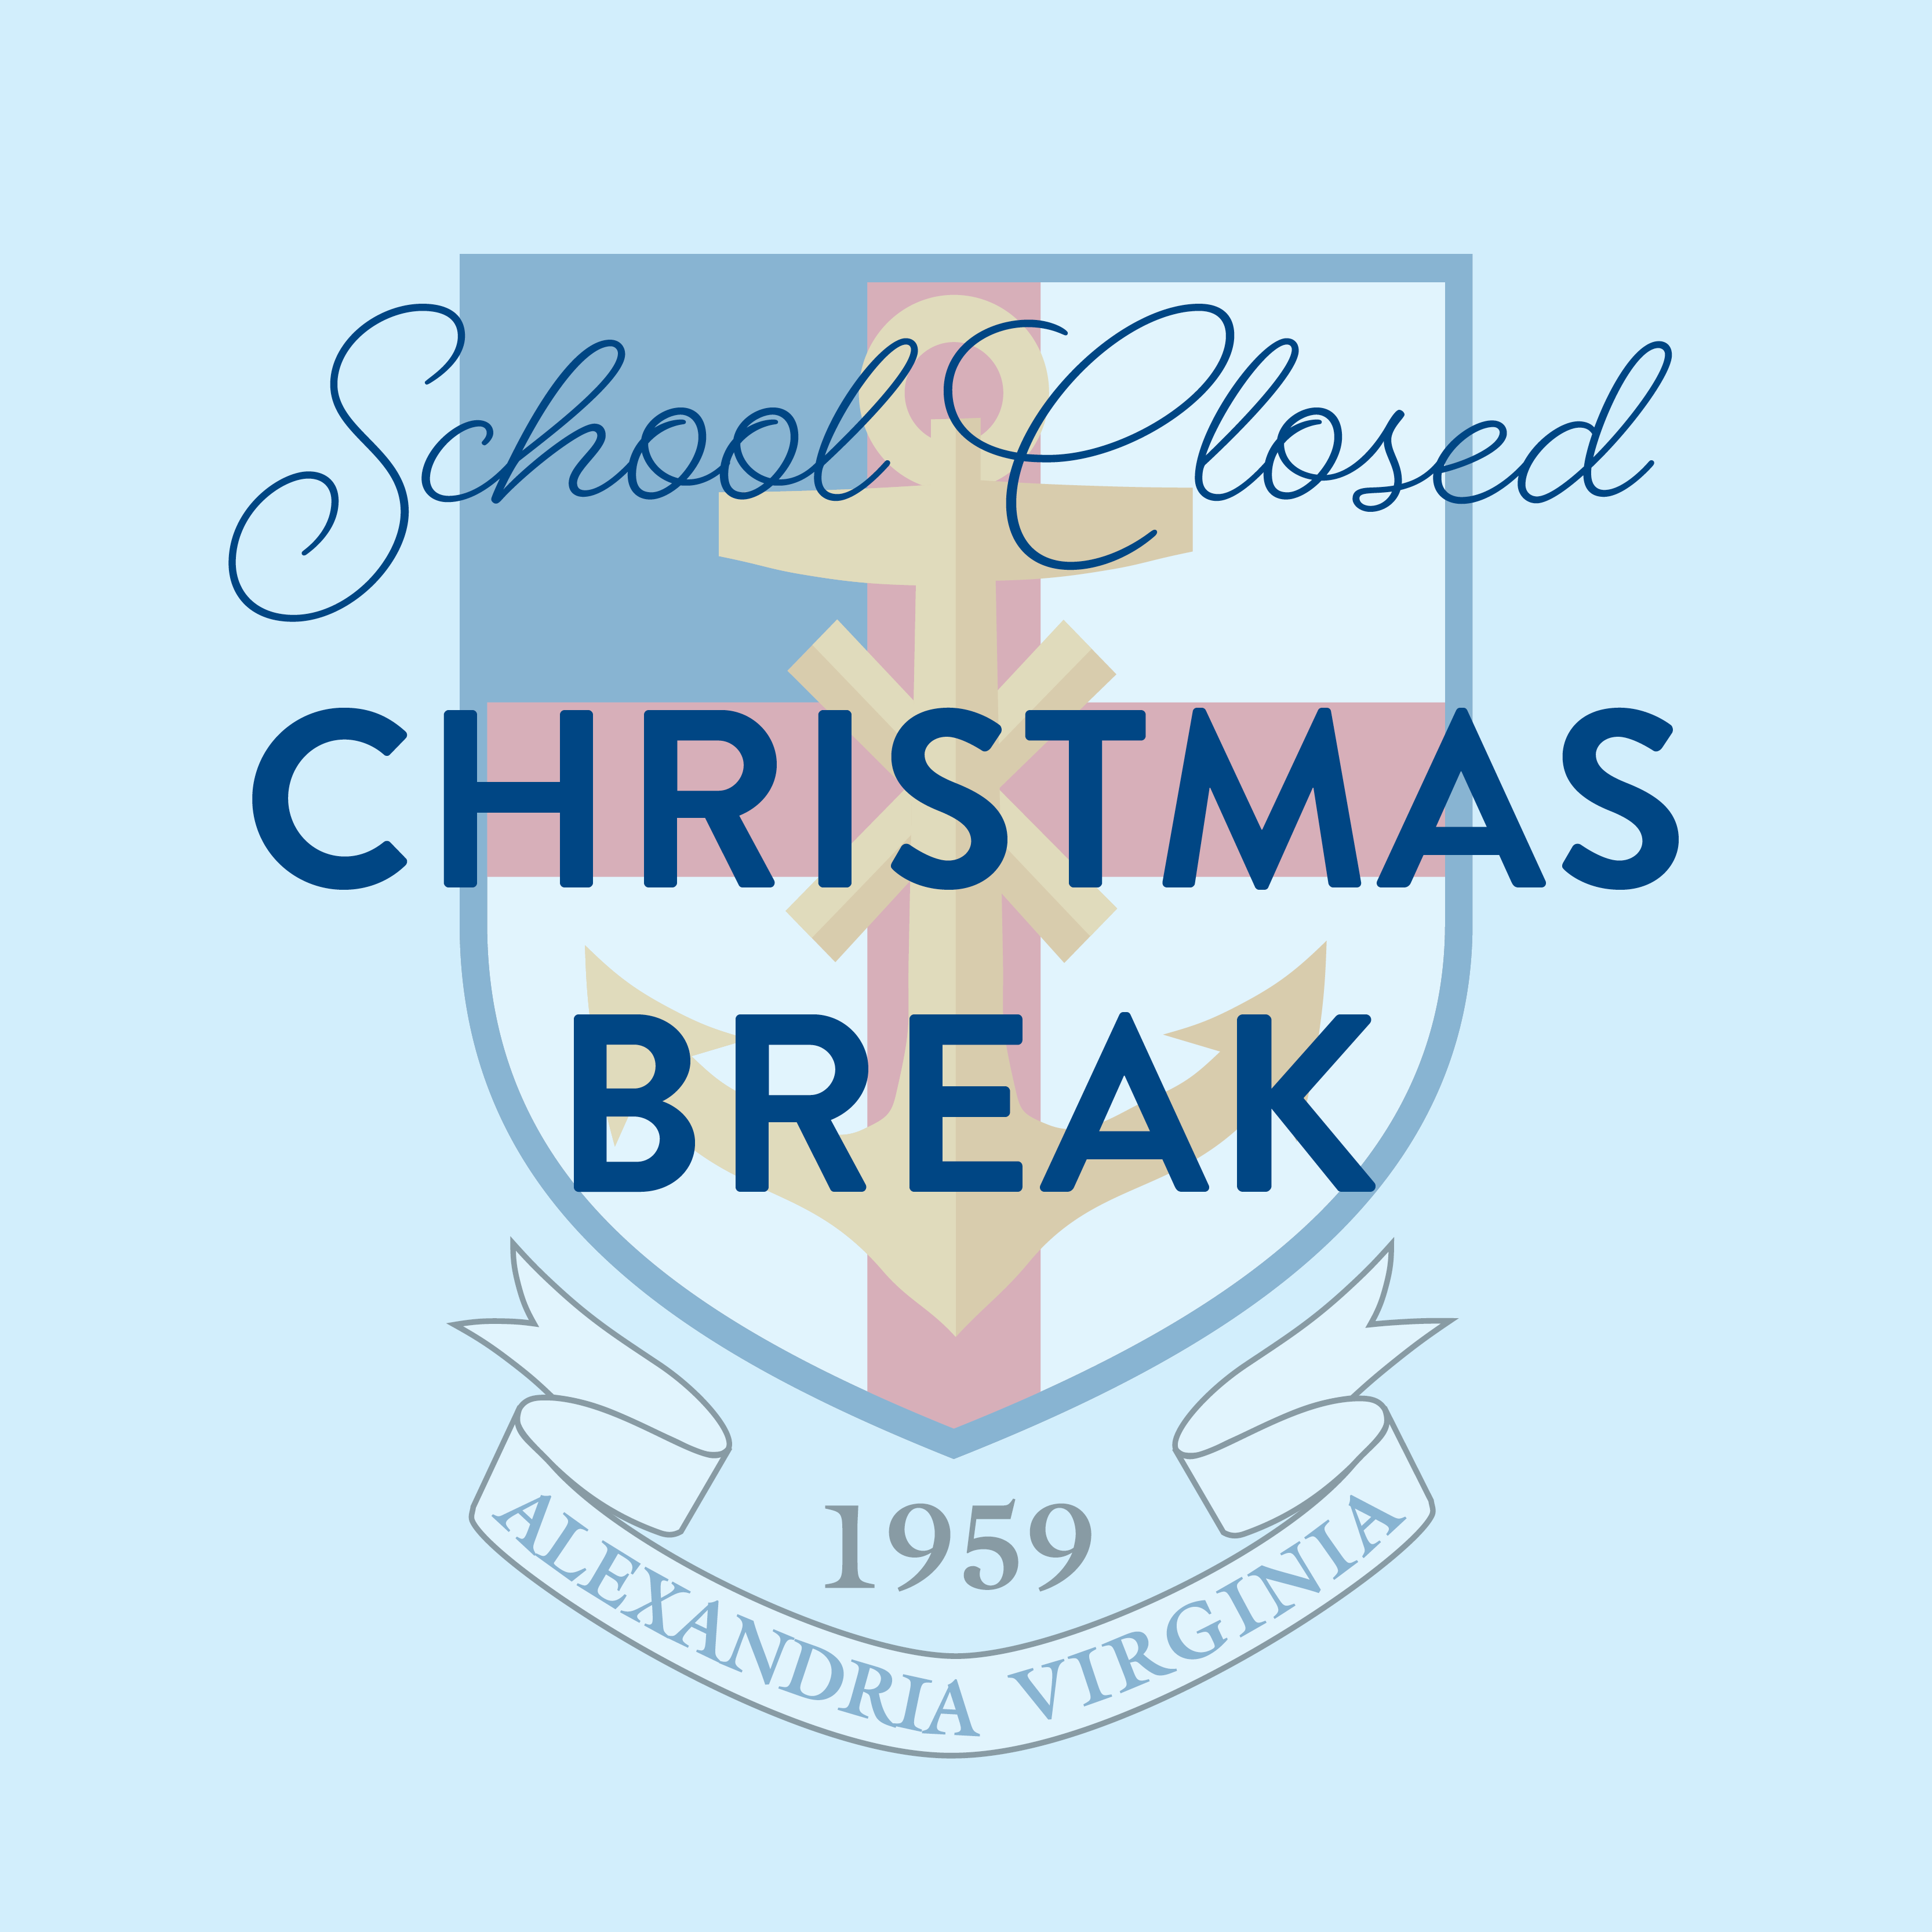 Christmas Break Grace Episcopal School